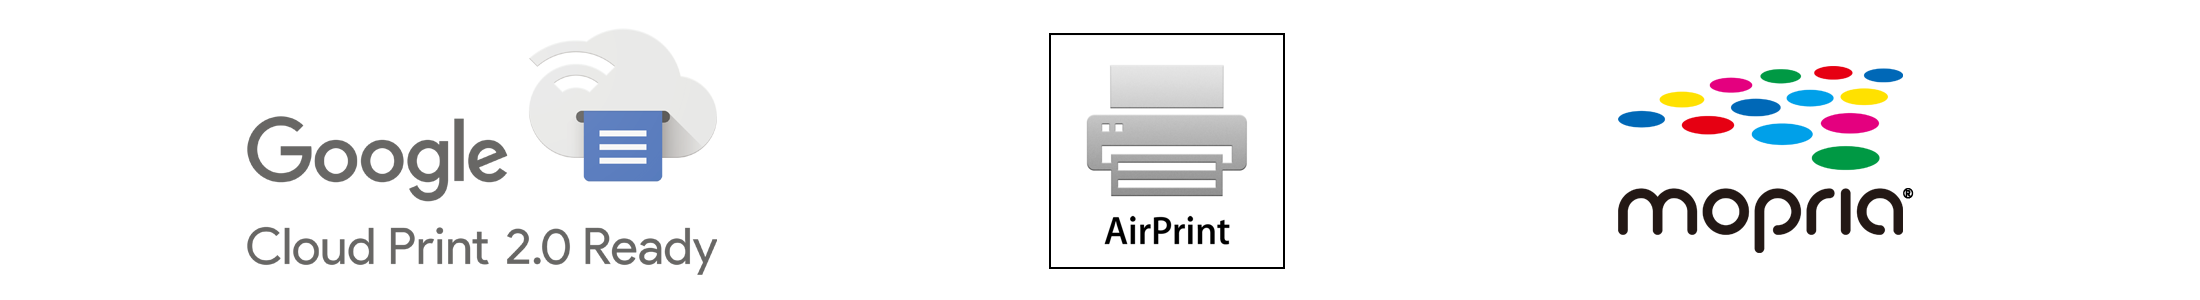 Google Cloud Print(TM) / AirPrint / Mopria(R) logo